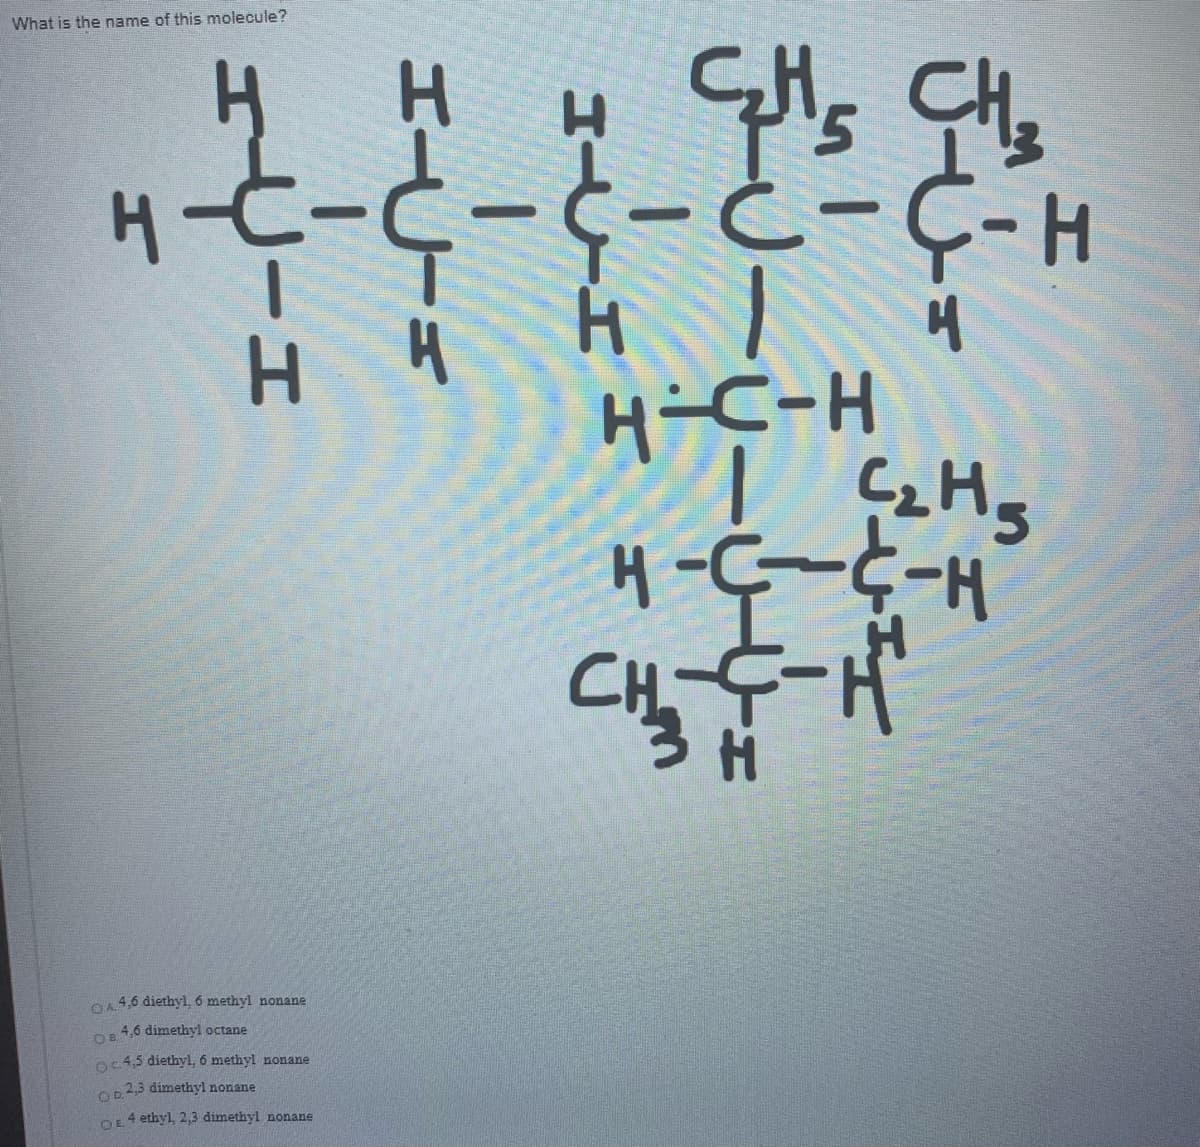 What is the name of this molecule?
H-t-C-C- ċ-C-H
H.
H-C-H
C
H-5-5-H
OA4,6 diethyl, 6 methyl nonane
4,6 dimethyl octane
OB
o4,5 diethyl, 6 methyl nonane
Op2,3 dimethyl nonane
4 ethyl, 2,3 dimethyl nonane
OE
